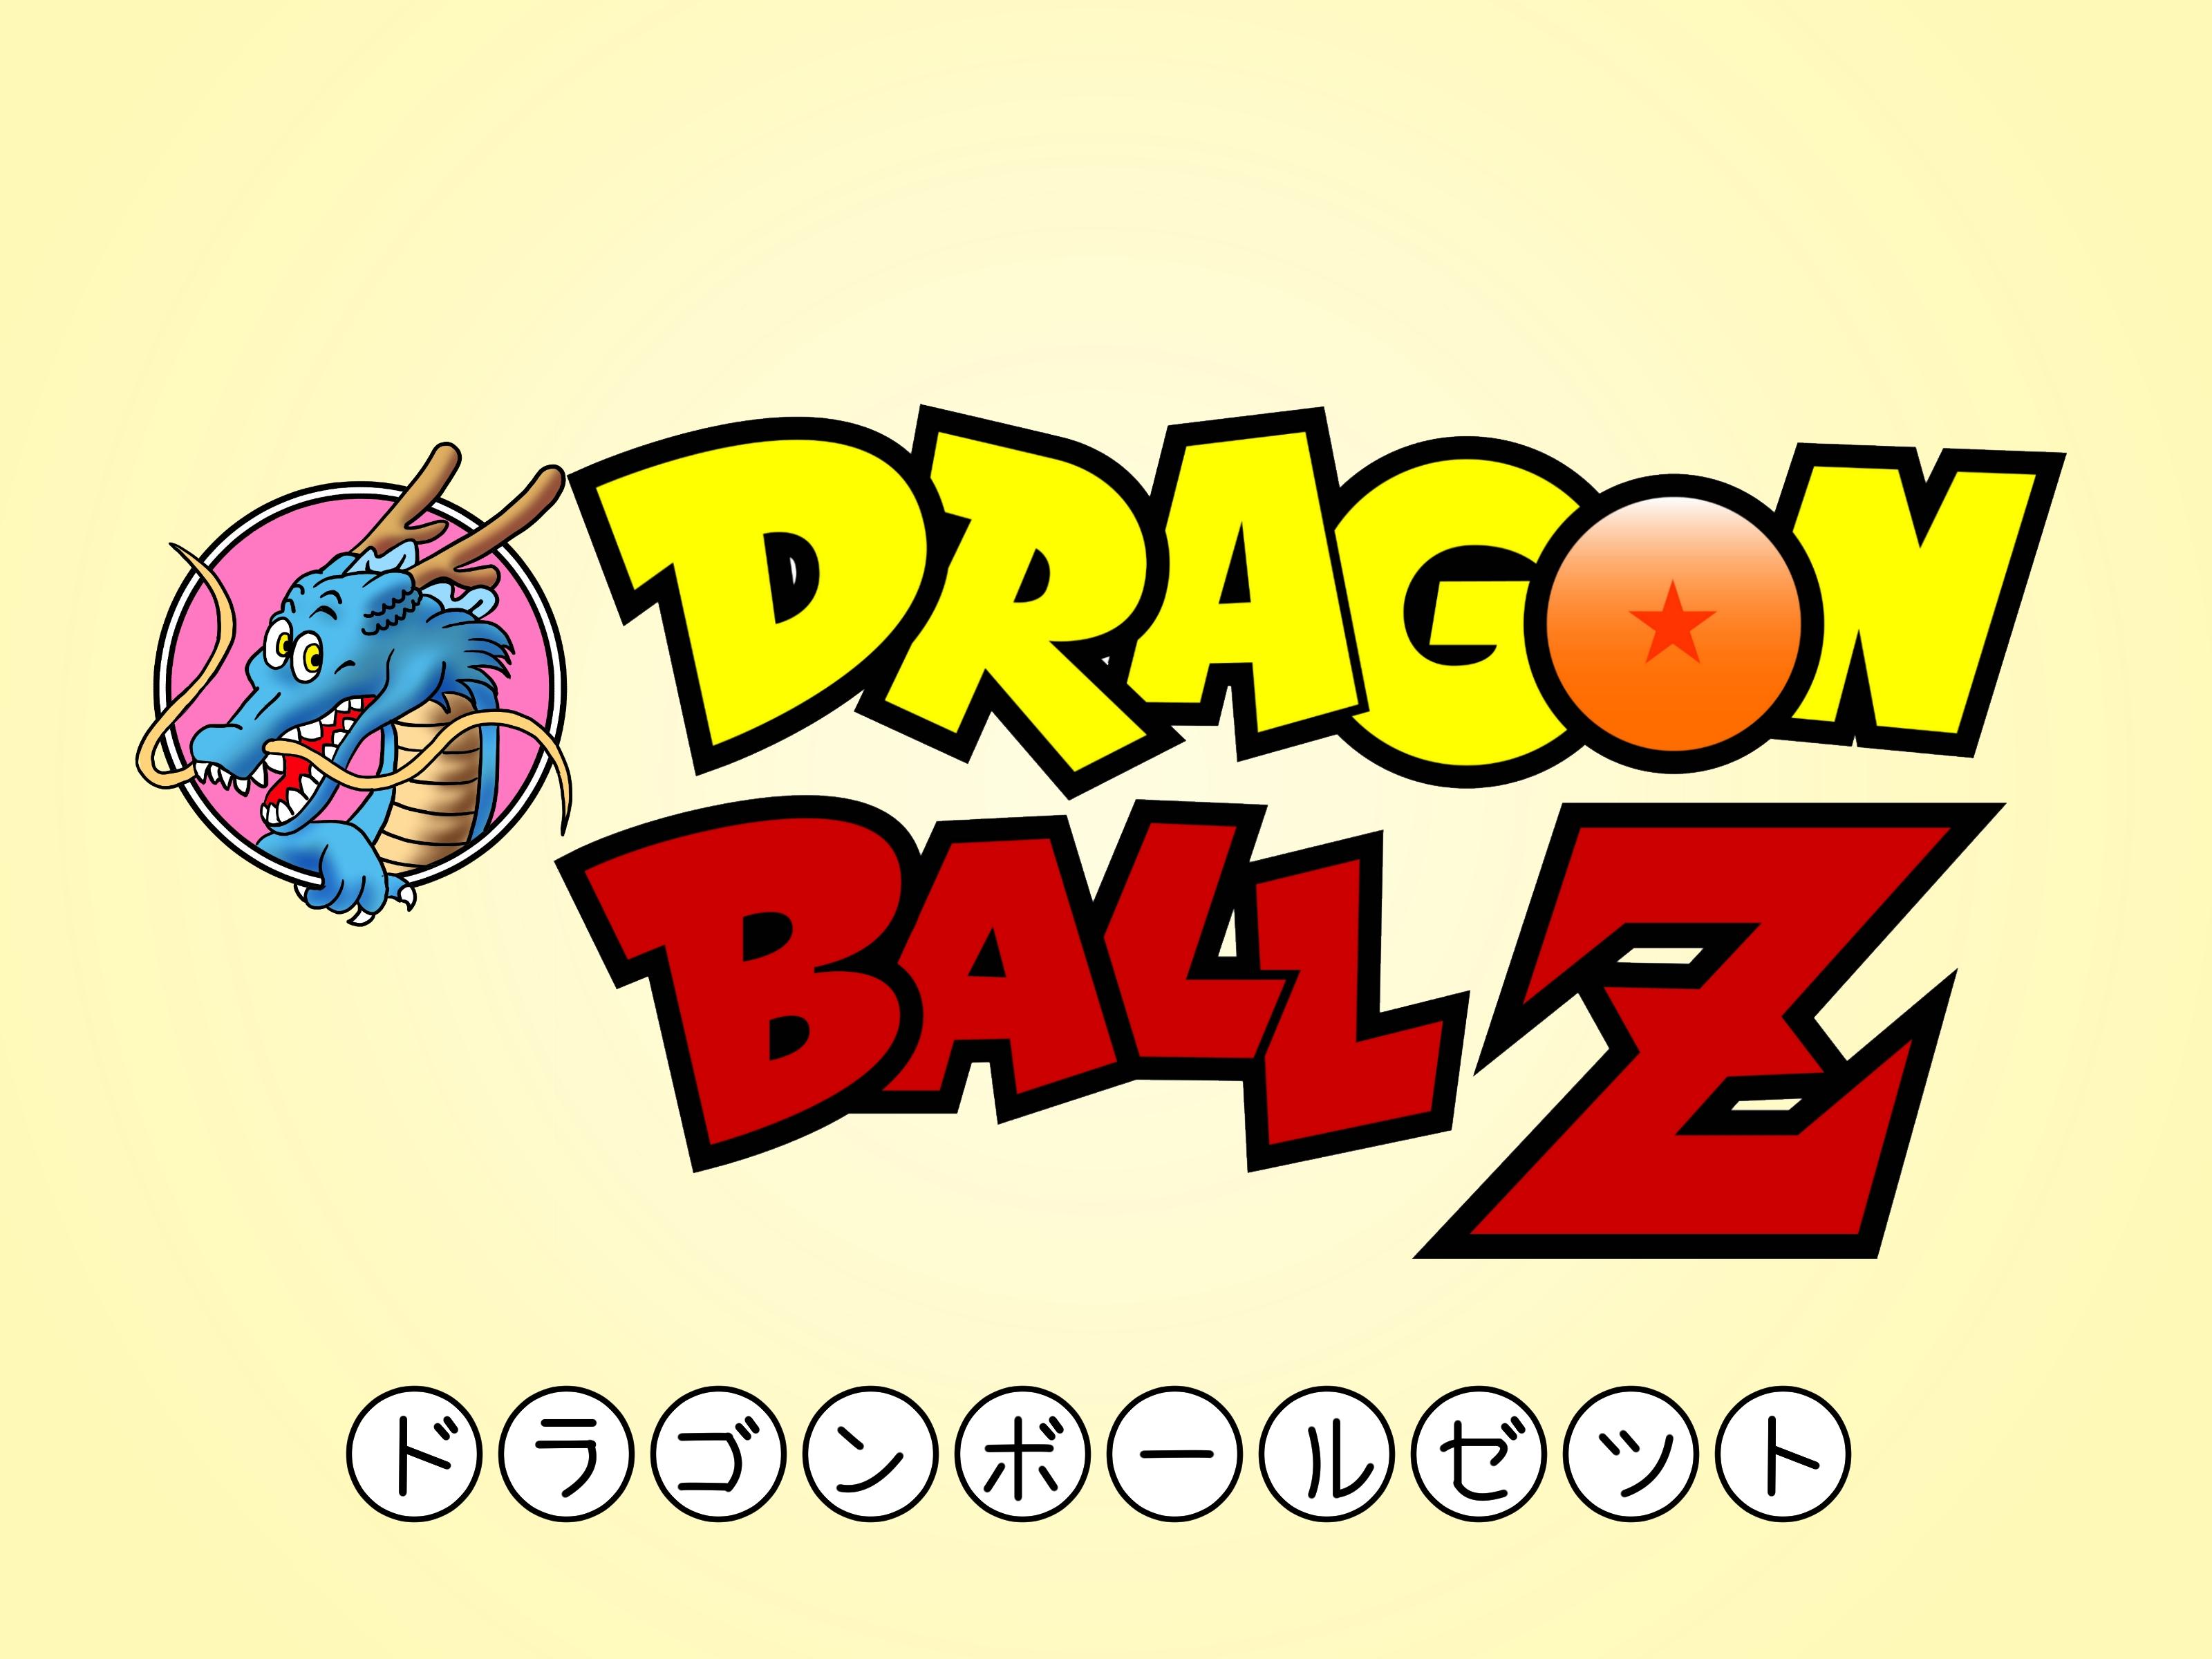 3200 x 2400 · jpeg - Dragon Ball Z Logo wallpaper | 3200x2400 | #27659